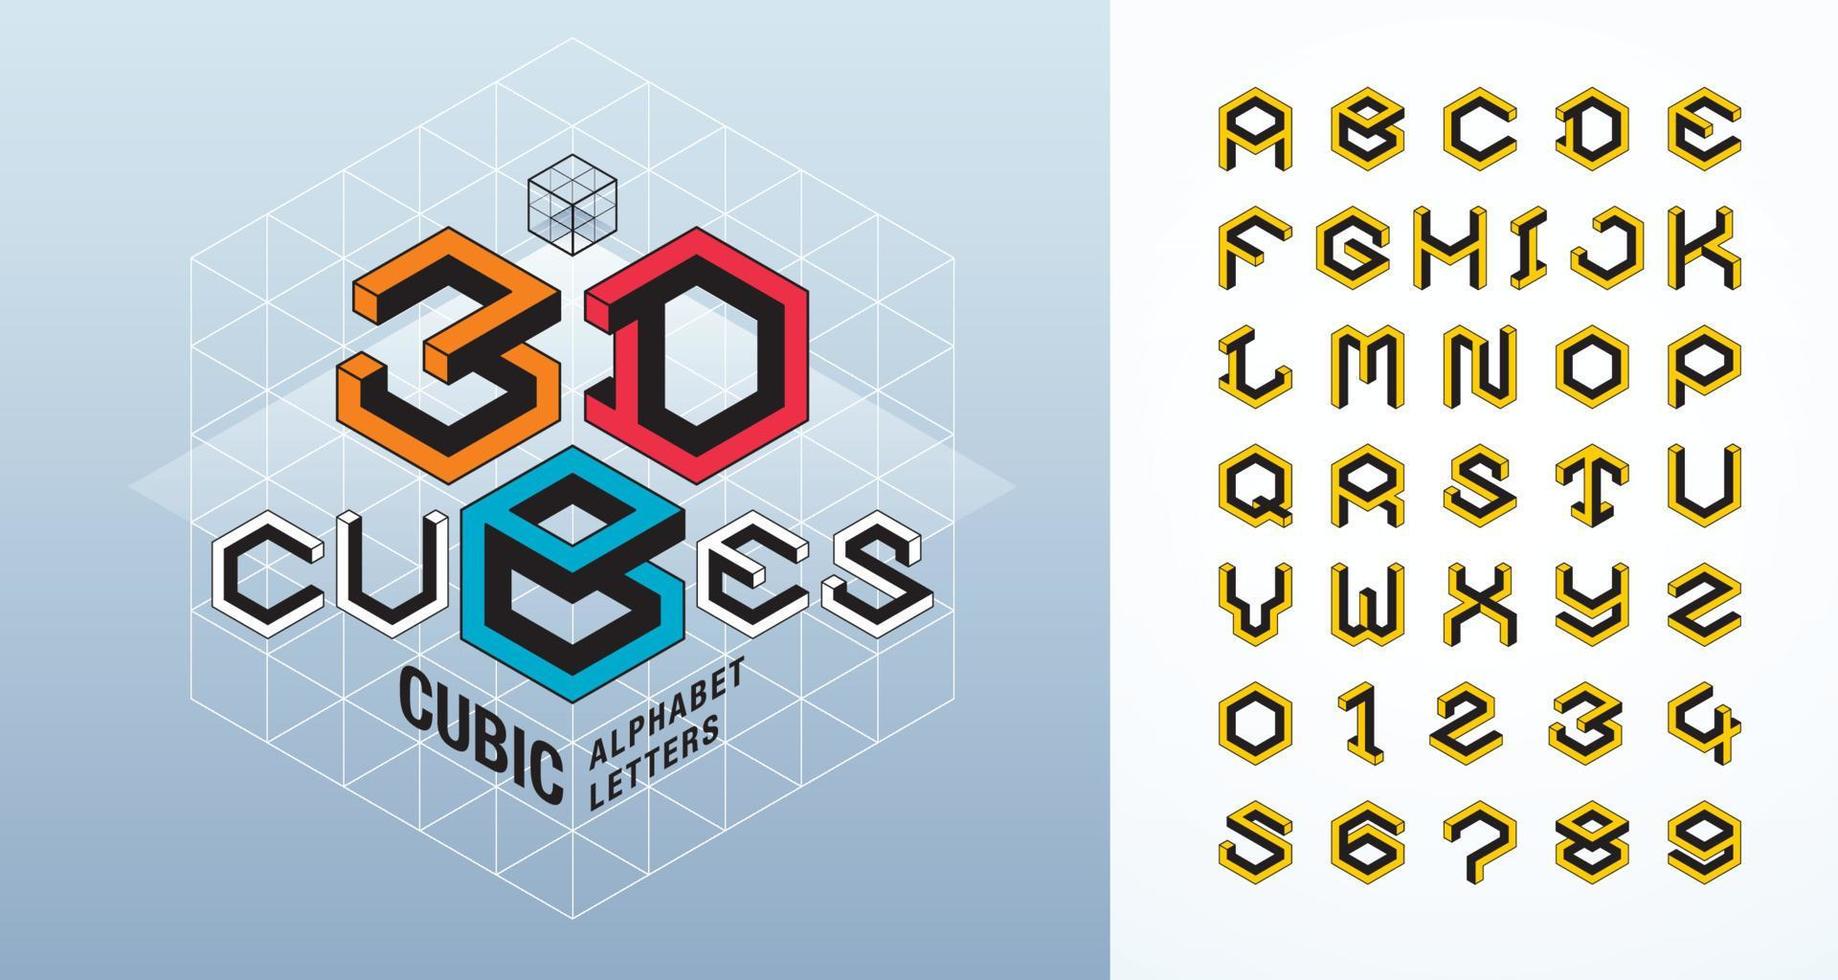 caratteri stilizzati esagonali 3d astratti. vettore di lettere e numeri dell'alfabeto cubo.